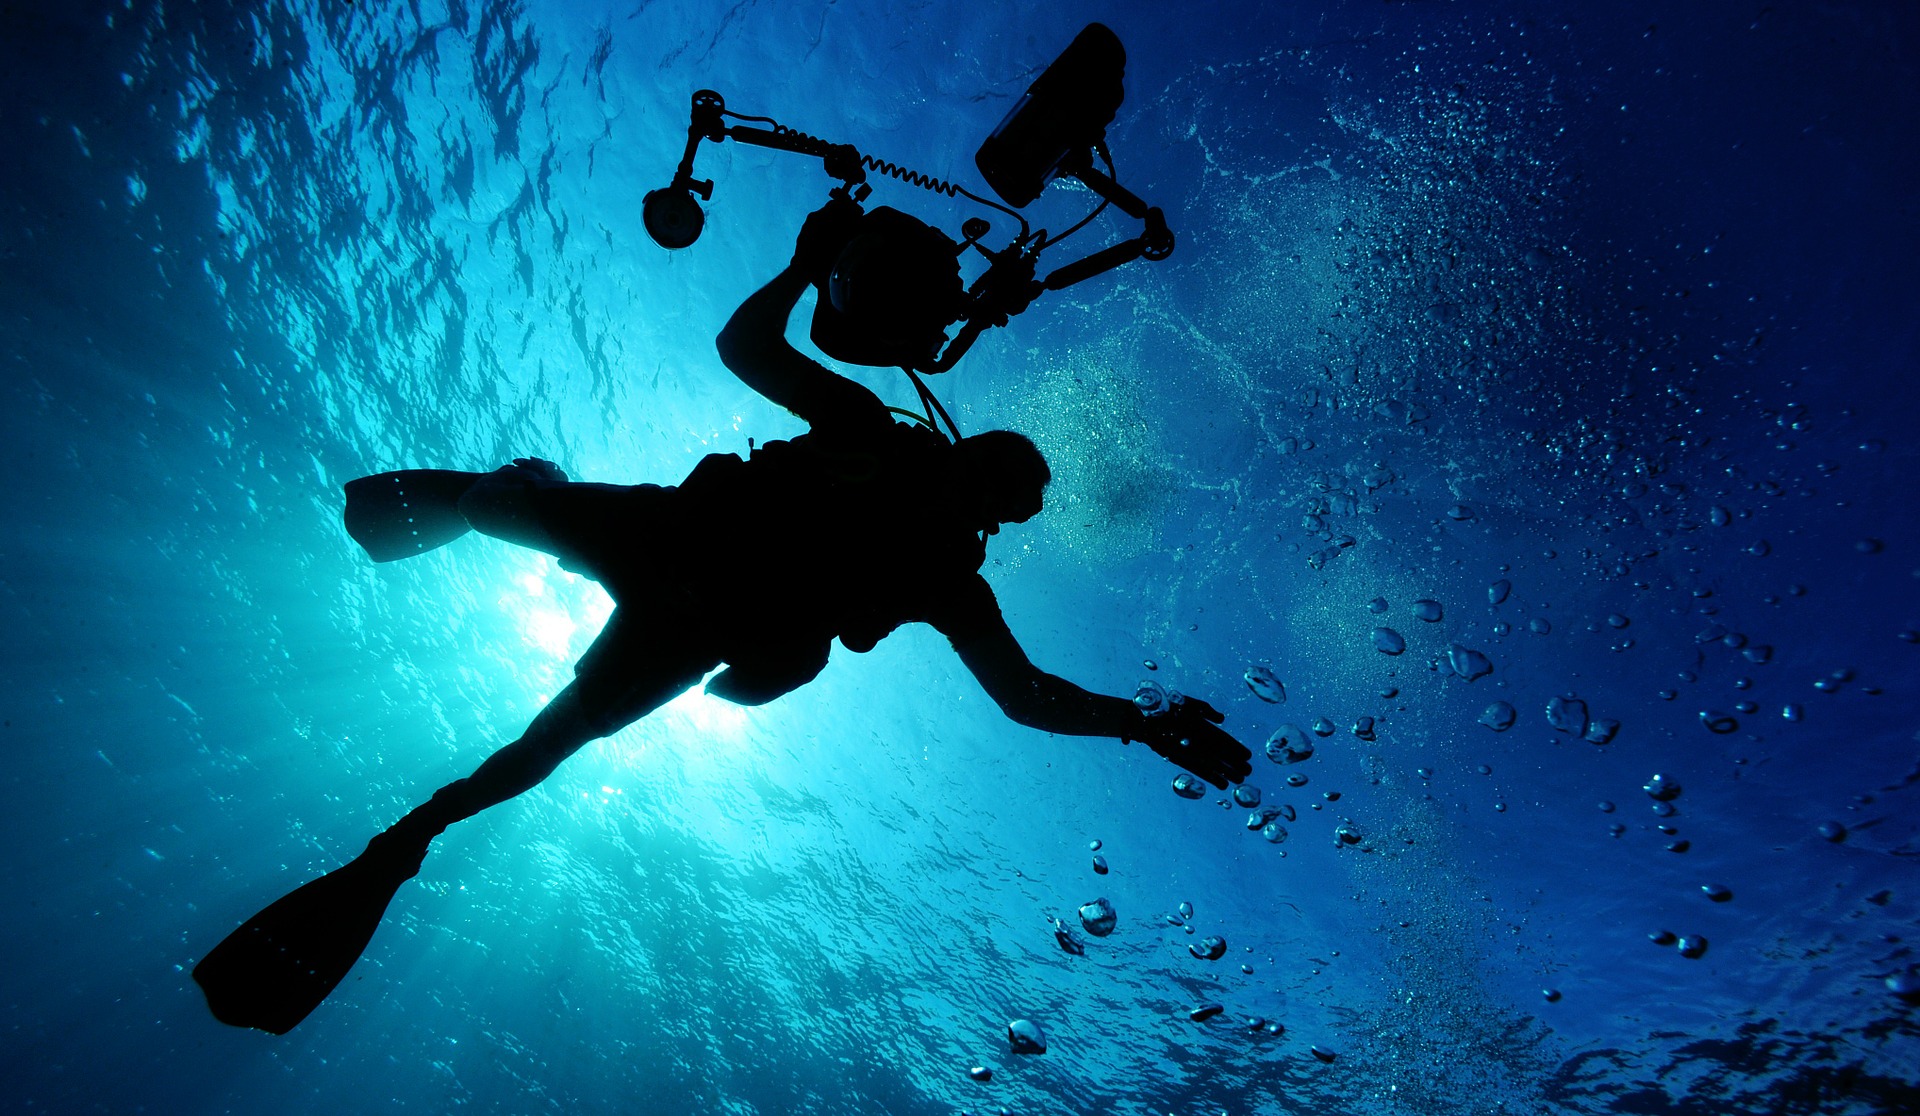 Immersioni subacquee: Informazioni e consigli, con i migliori luoghi per immergersi nelle acque dellâ€™Italia